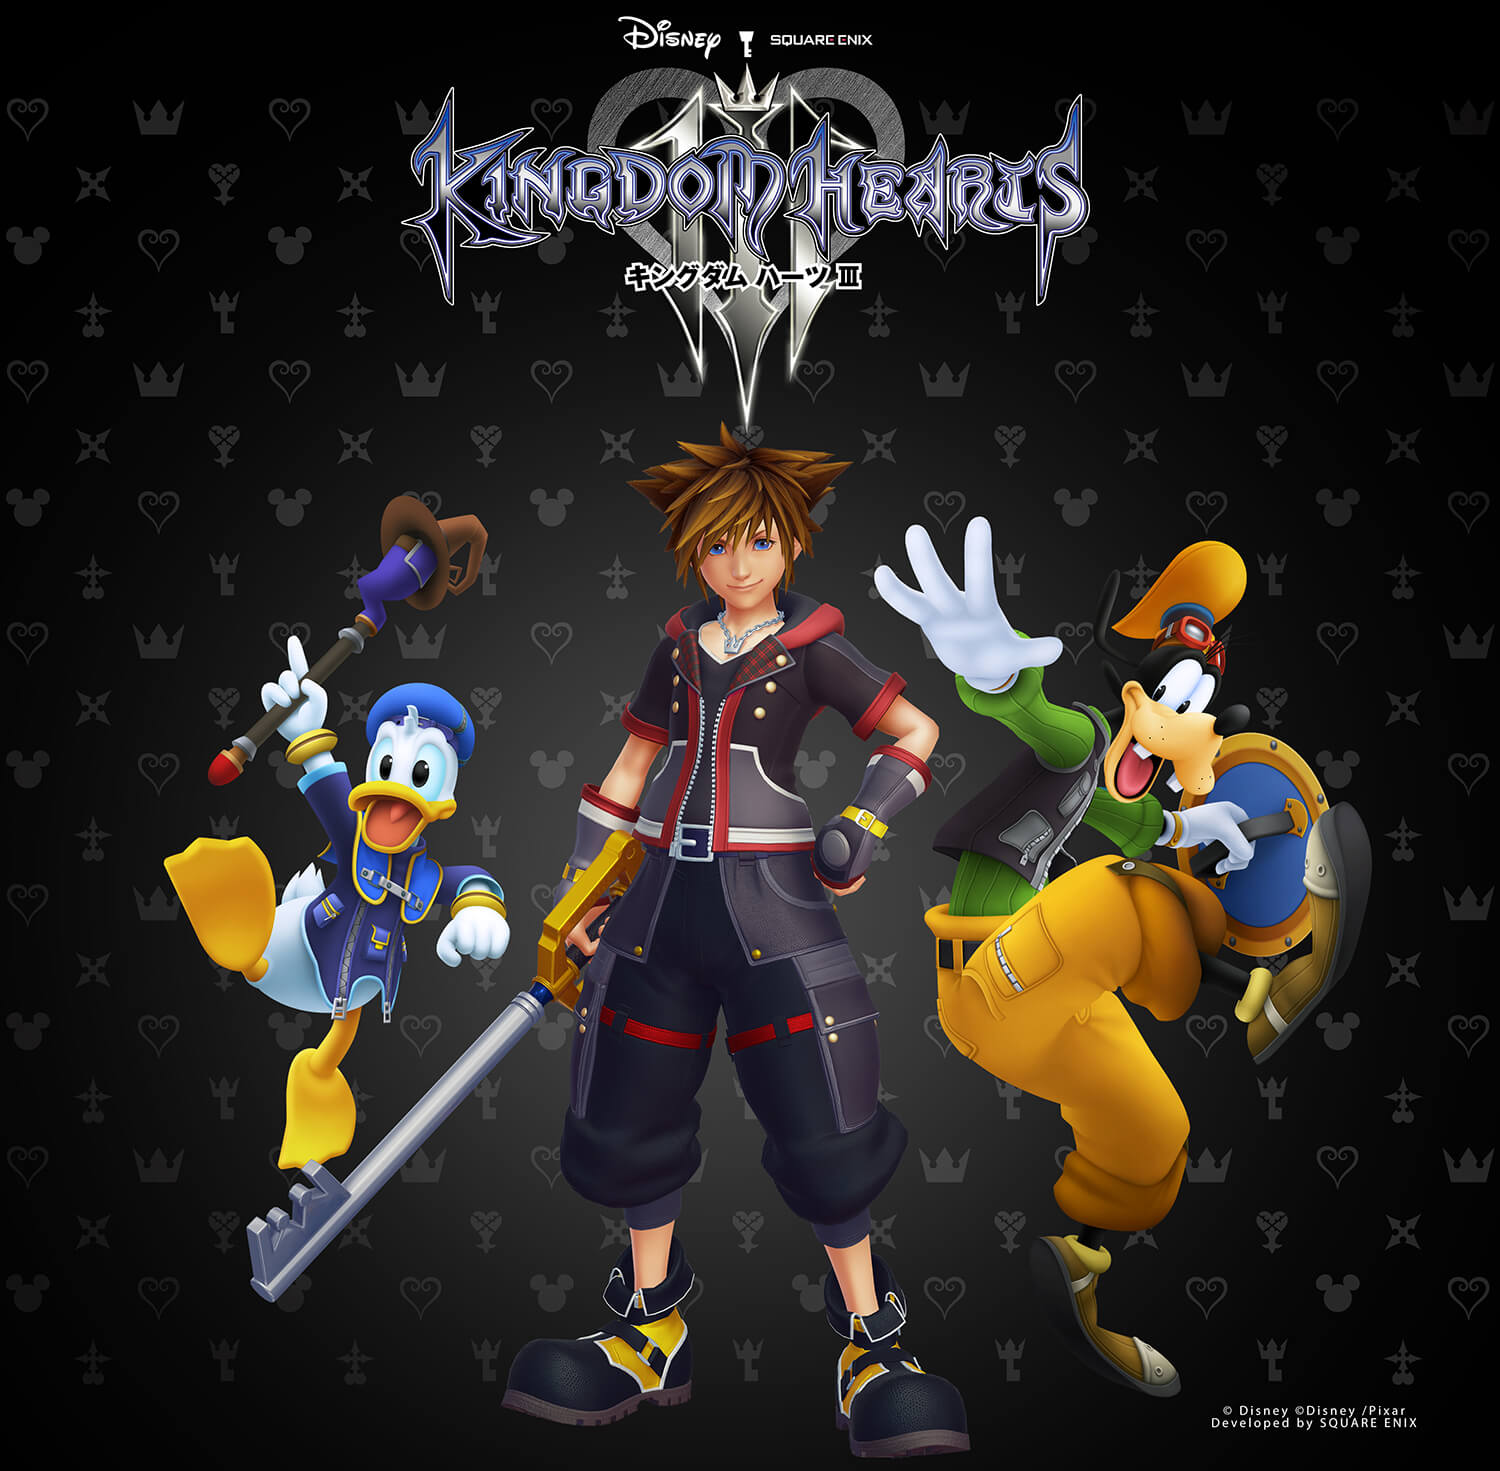 宇多田ヒカル Kingdom Hearts Iii テーマソング 誓い を発表 Moshi Moshi Nippon もしもしにっぽん